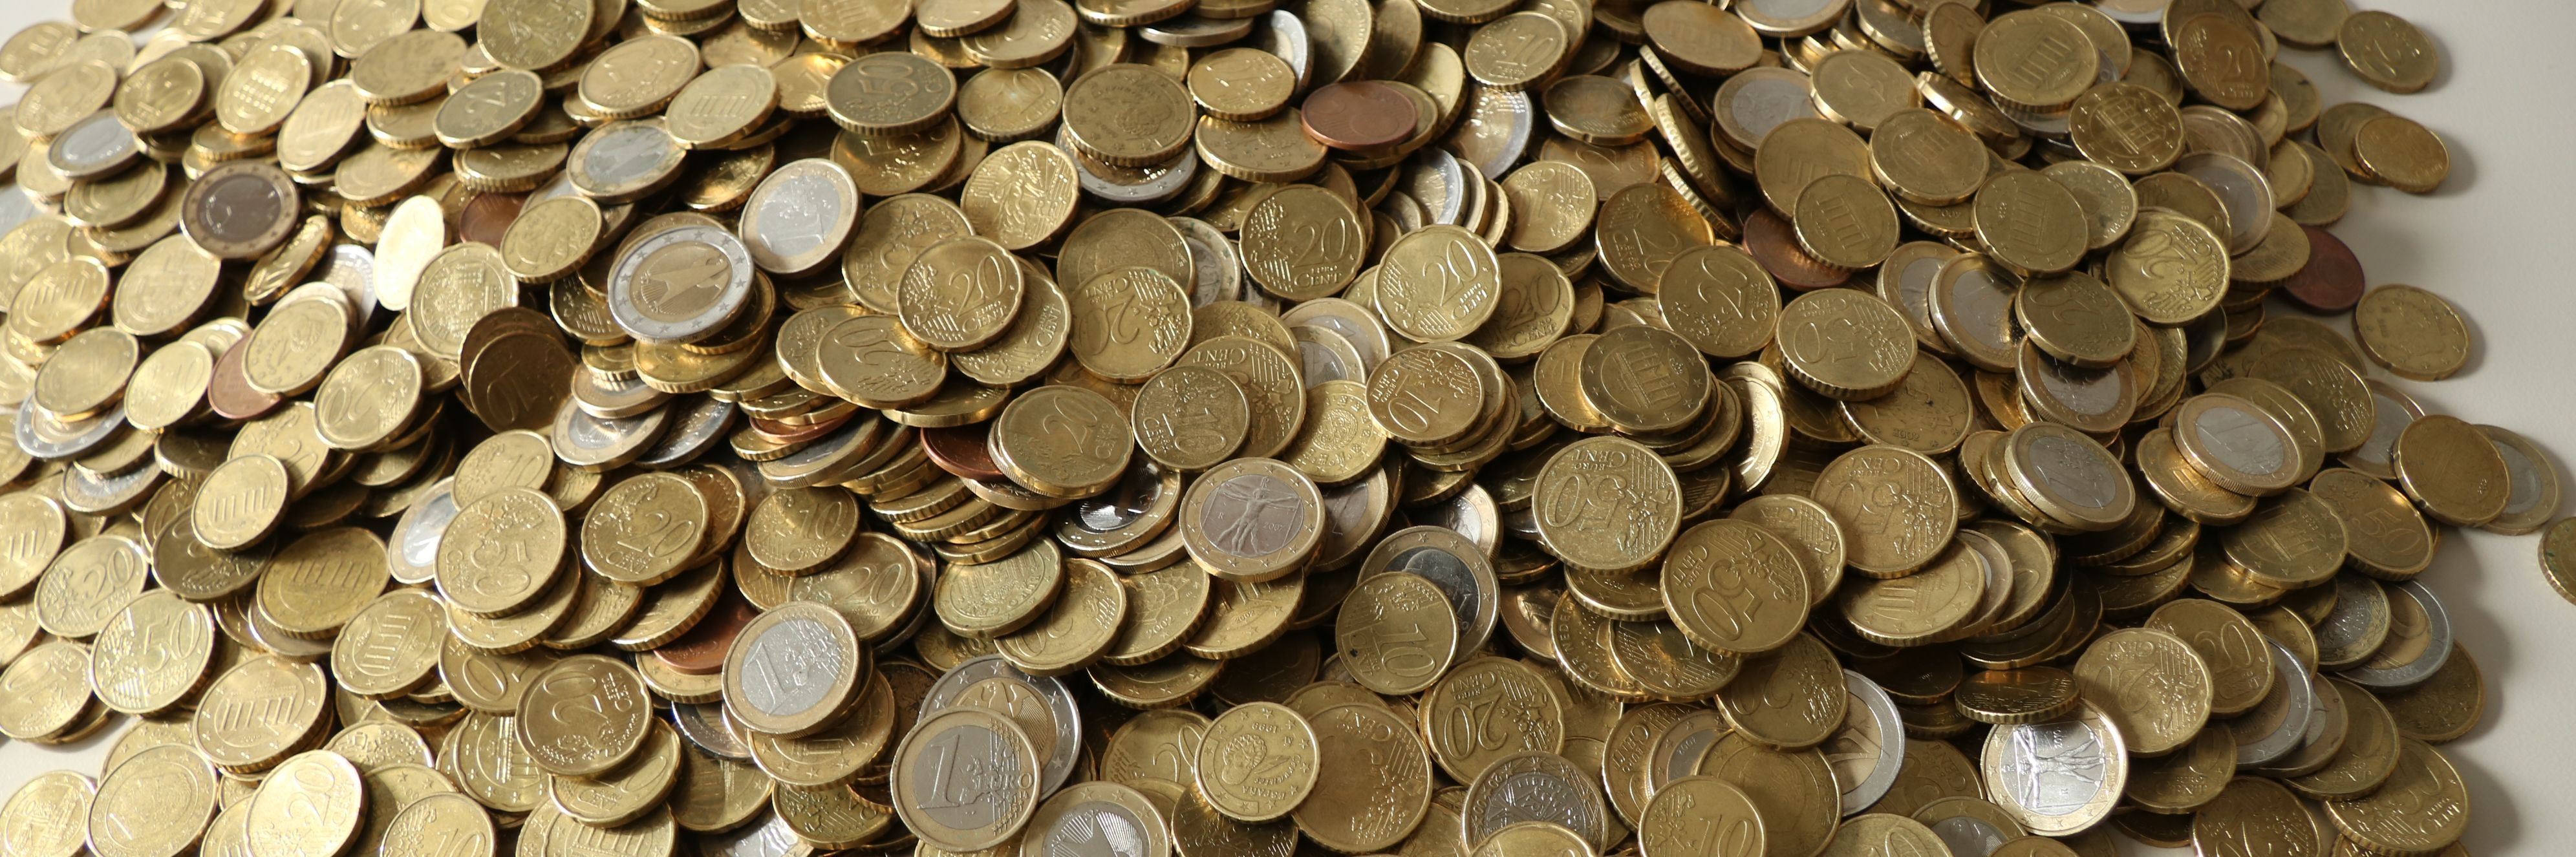 Auf einem weißen Tisch liegen zahllose Euro-Münzen auf einem großen Haufen.